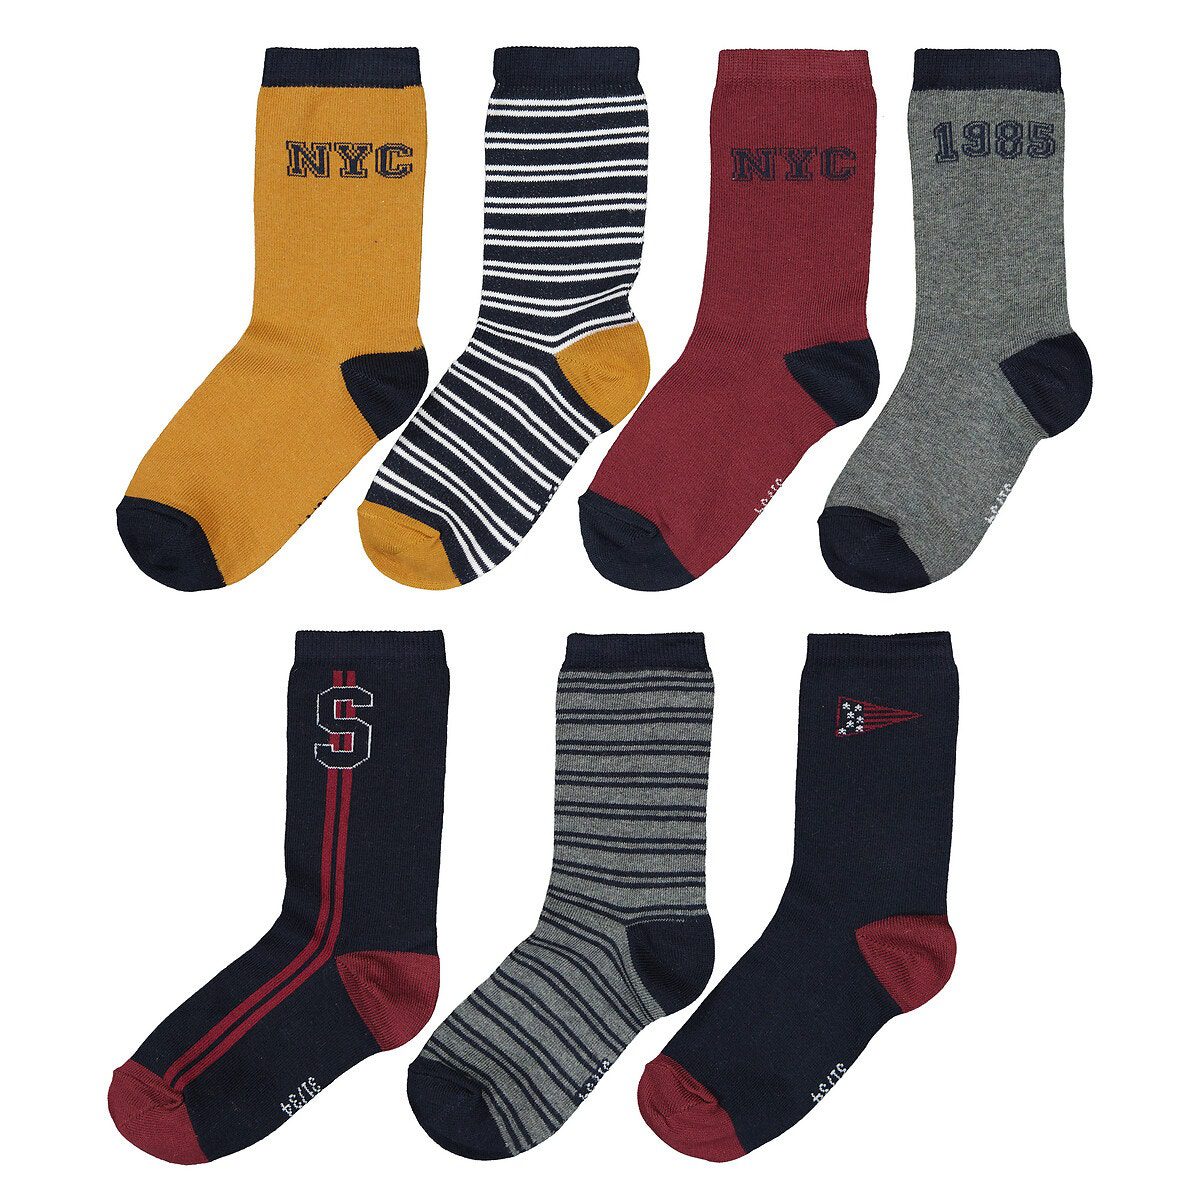 Σετ 7 ζευγάρια κάλτσες με μοτίβο New York Διαφορα Χρωματα